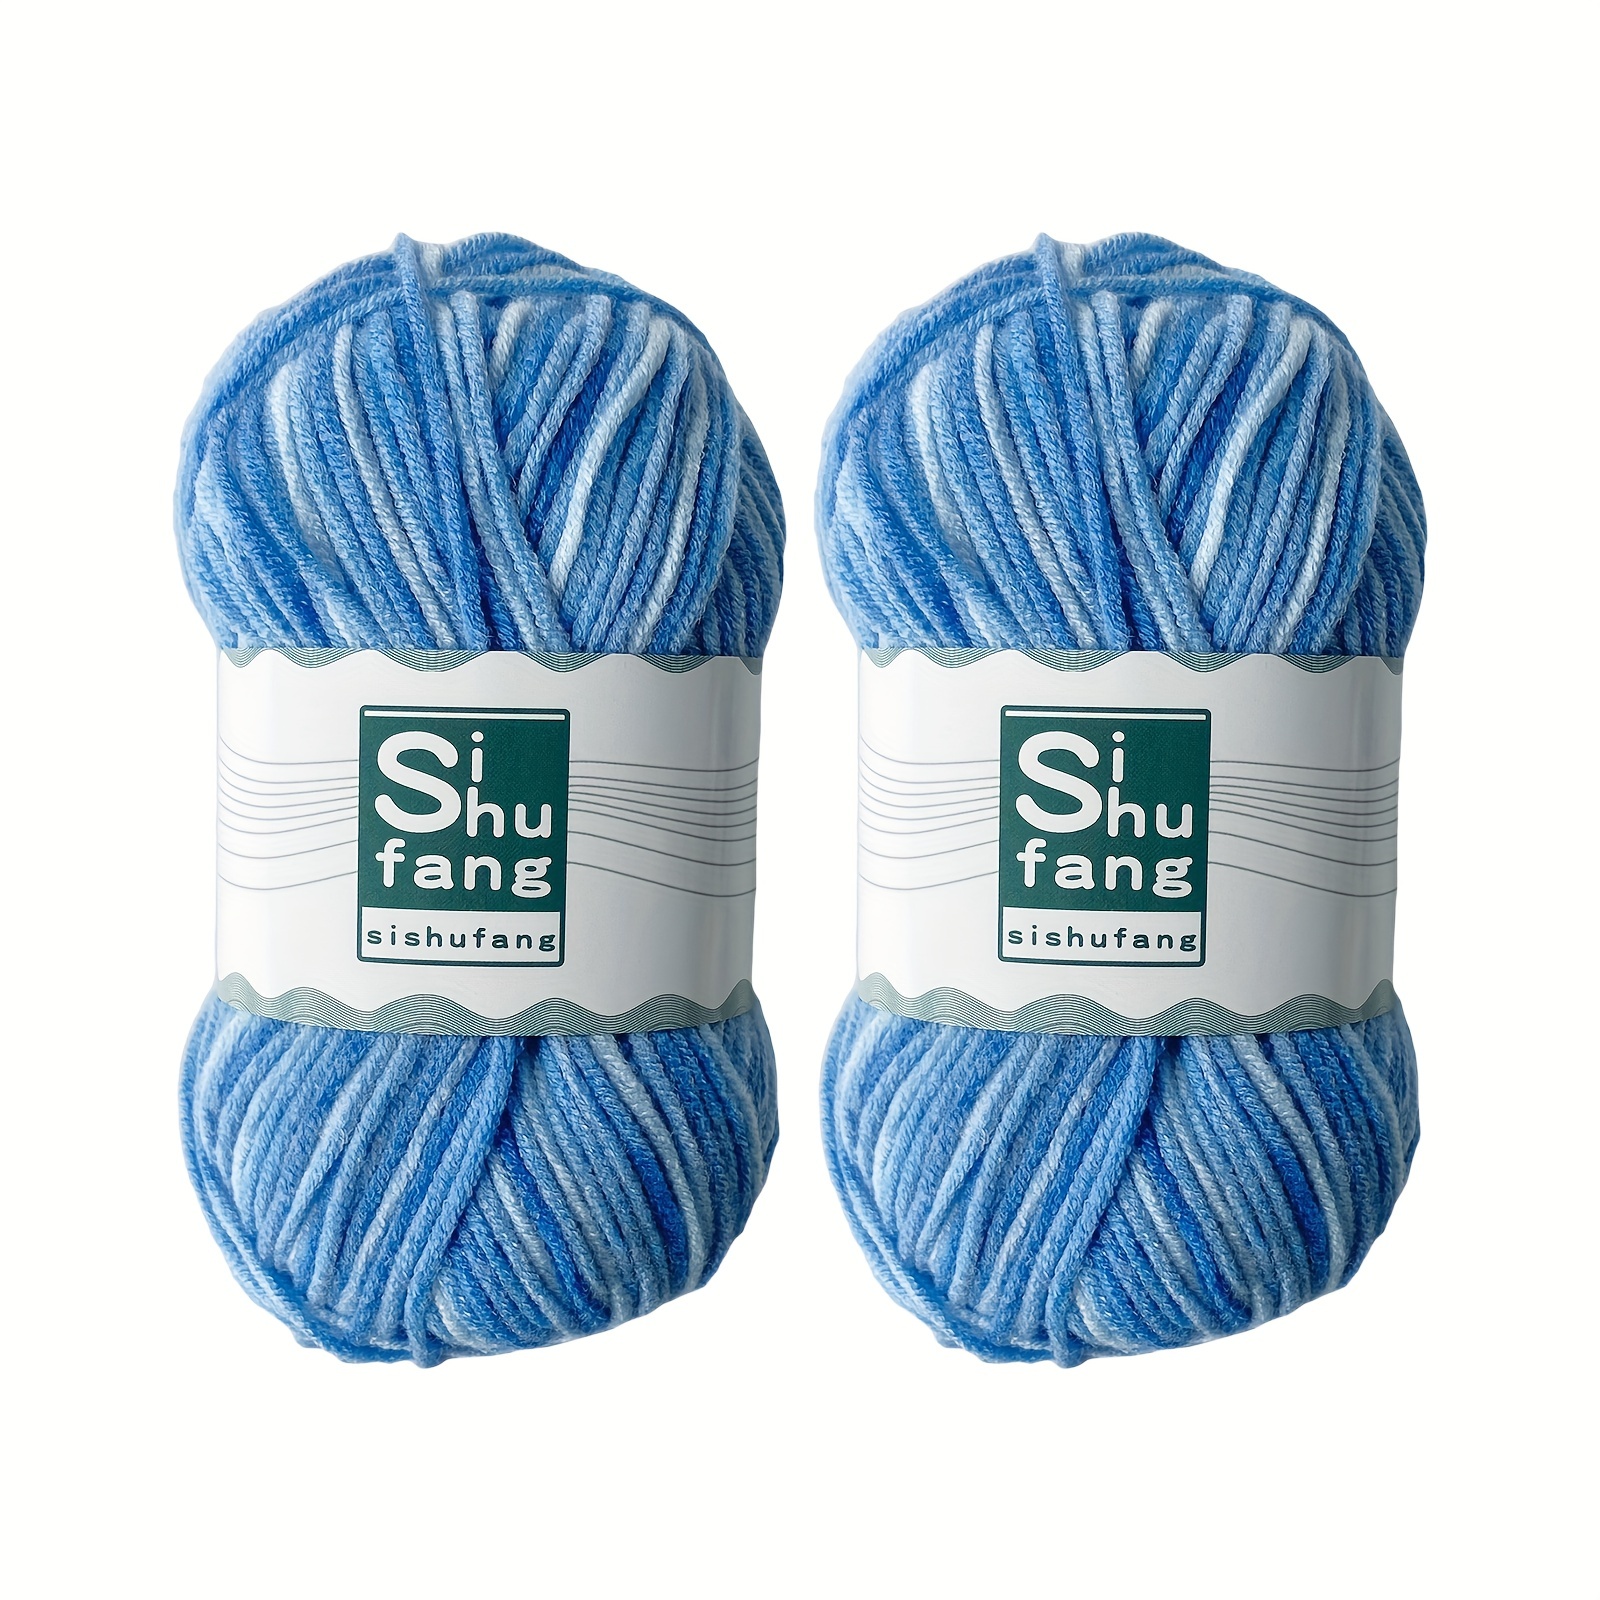 Comprar 6 hebras de Color arcoíris DIY ganchillo tejido a mano suéter leche  algodón suave hilo de algodón lana